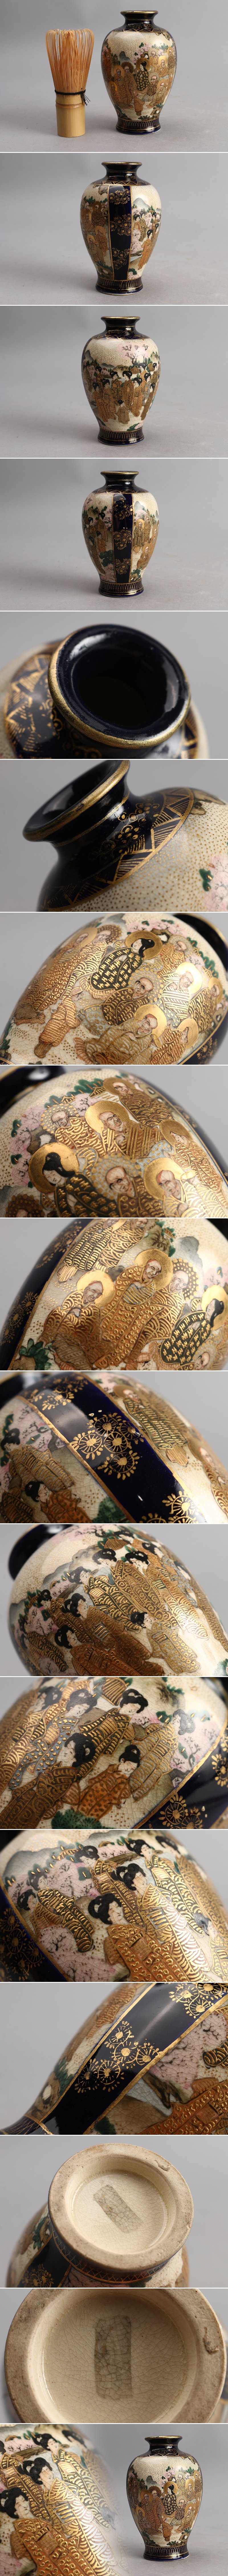 低価格日本美術 本薩摩 古薩摩 色絵 金彩 美人 人物 花瓶 花器 在銘 初荷 骨董 古玩 古美術品 古道具 BJ485 薩摩